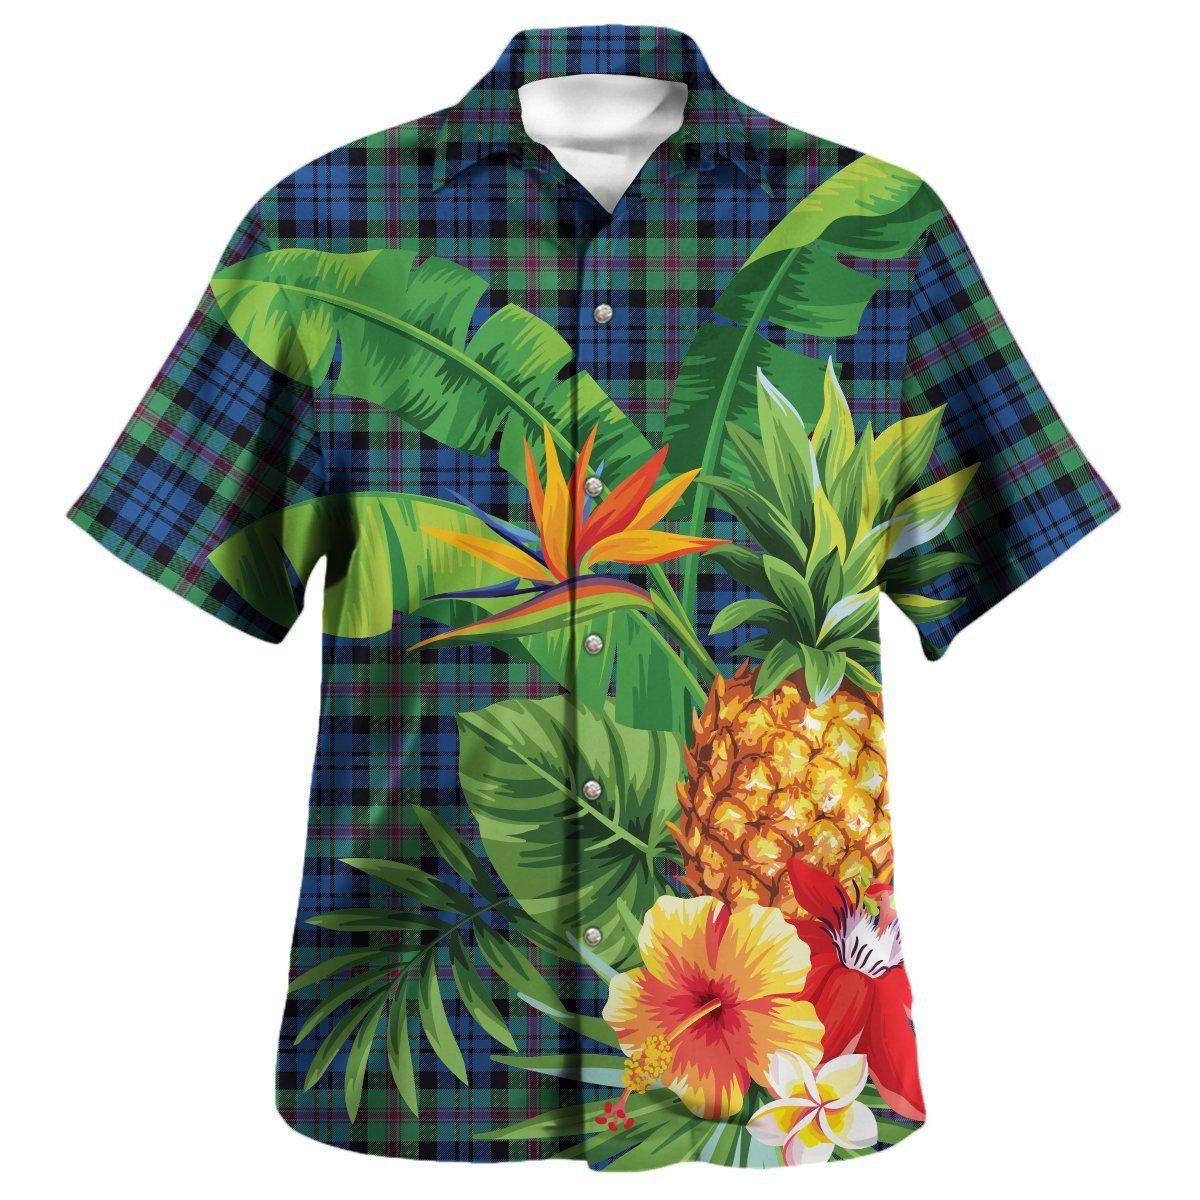 Baird Ancient Tartan Aloha Shirt version 2